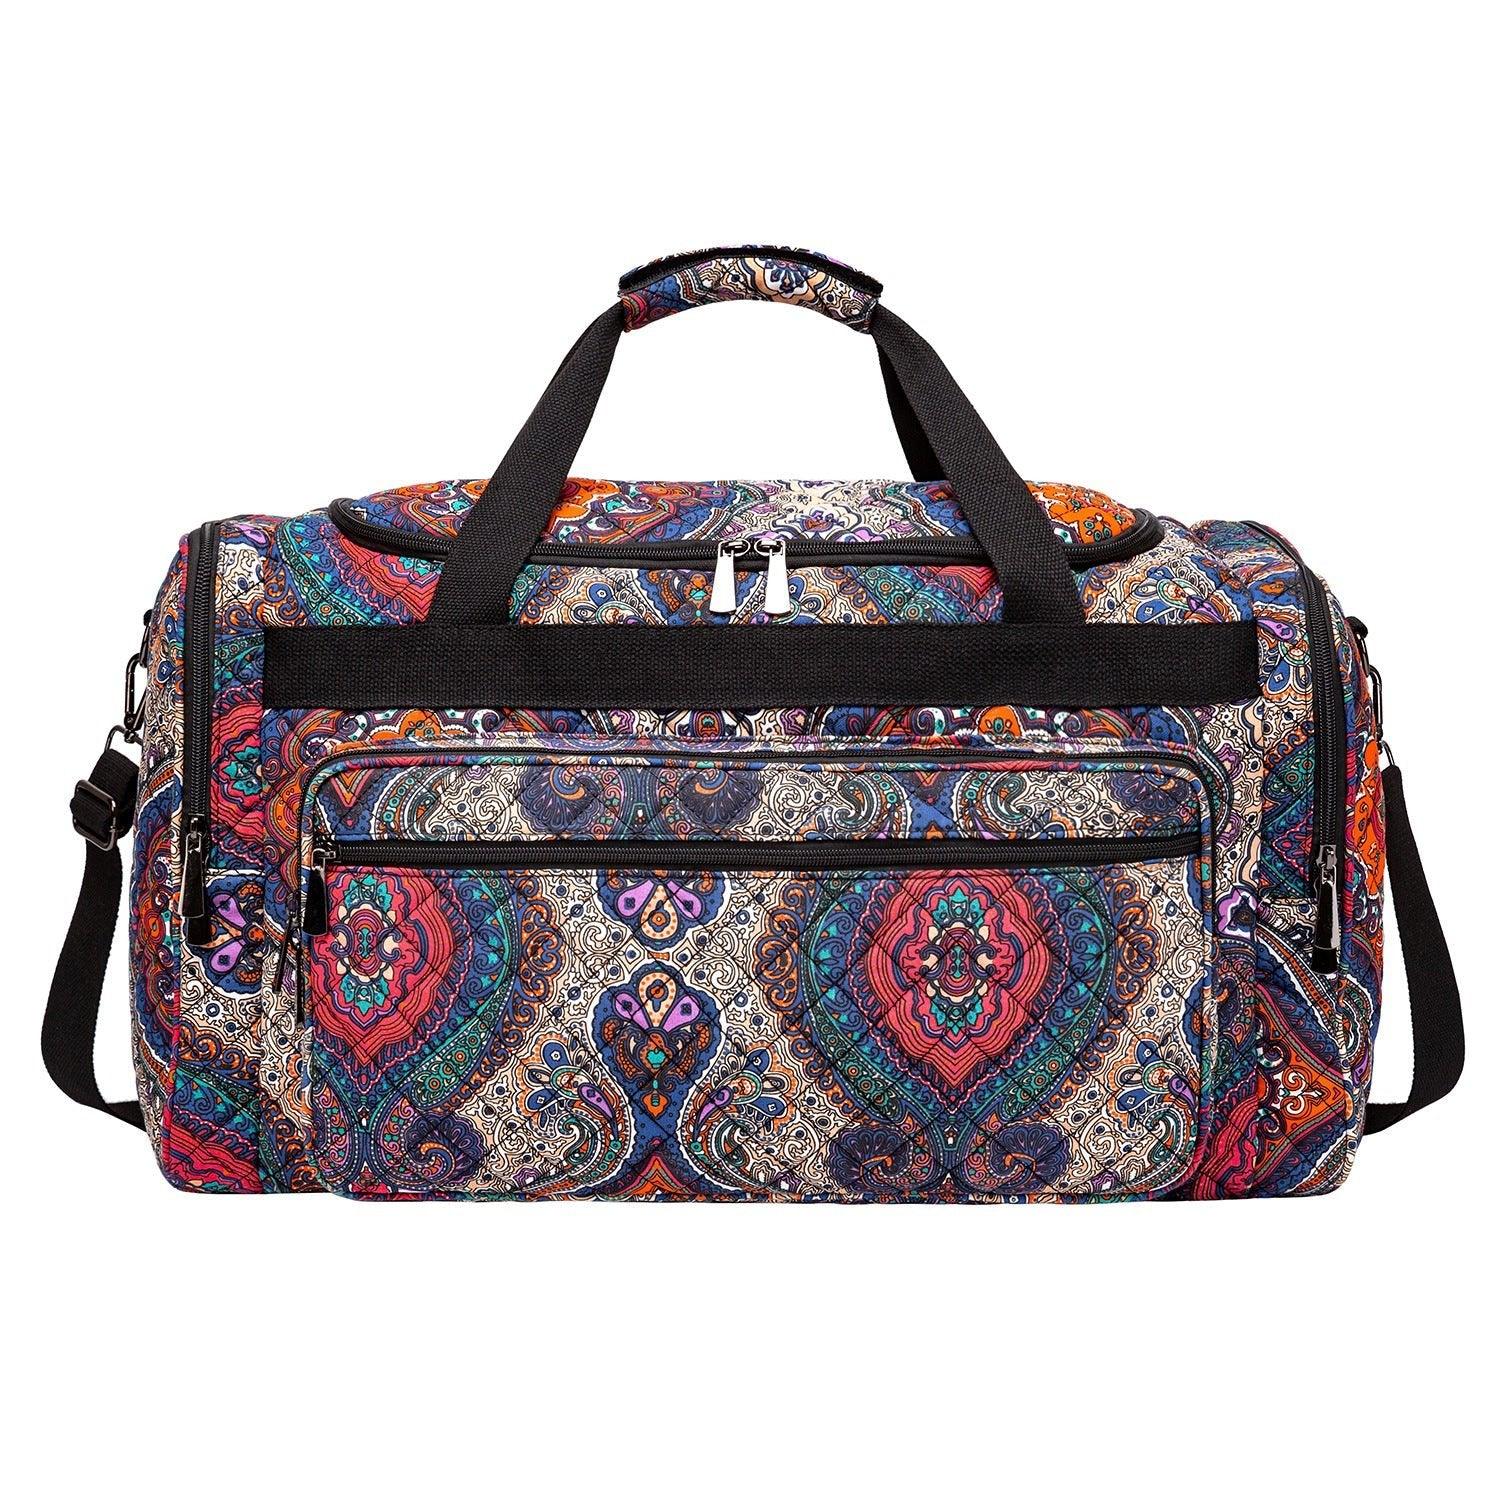 Weekend Duffle Bag Canvas Travel Bag - Woosir